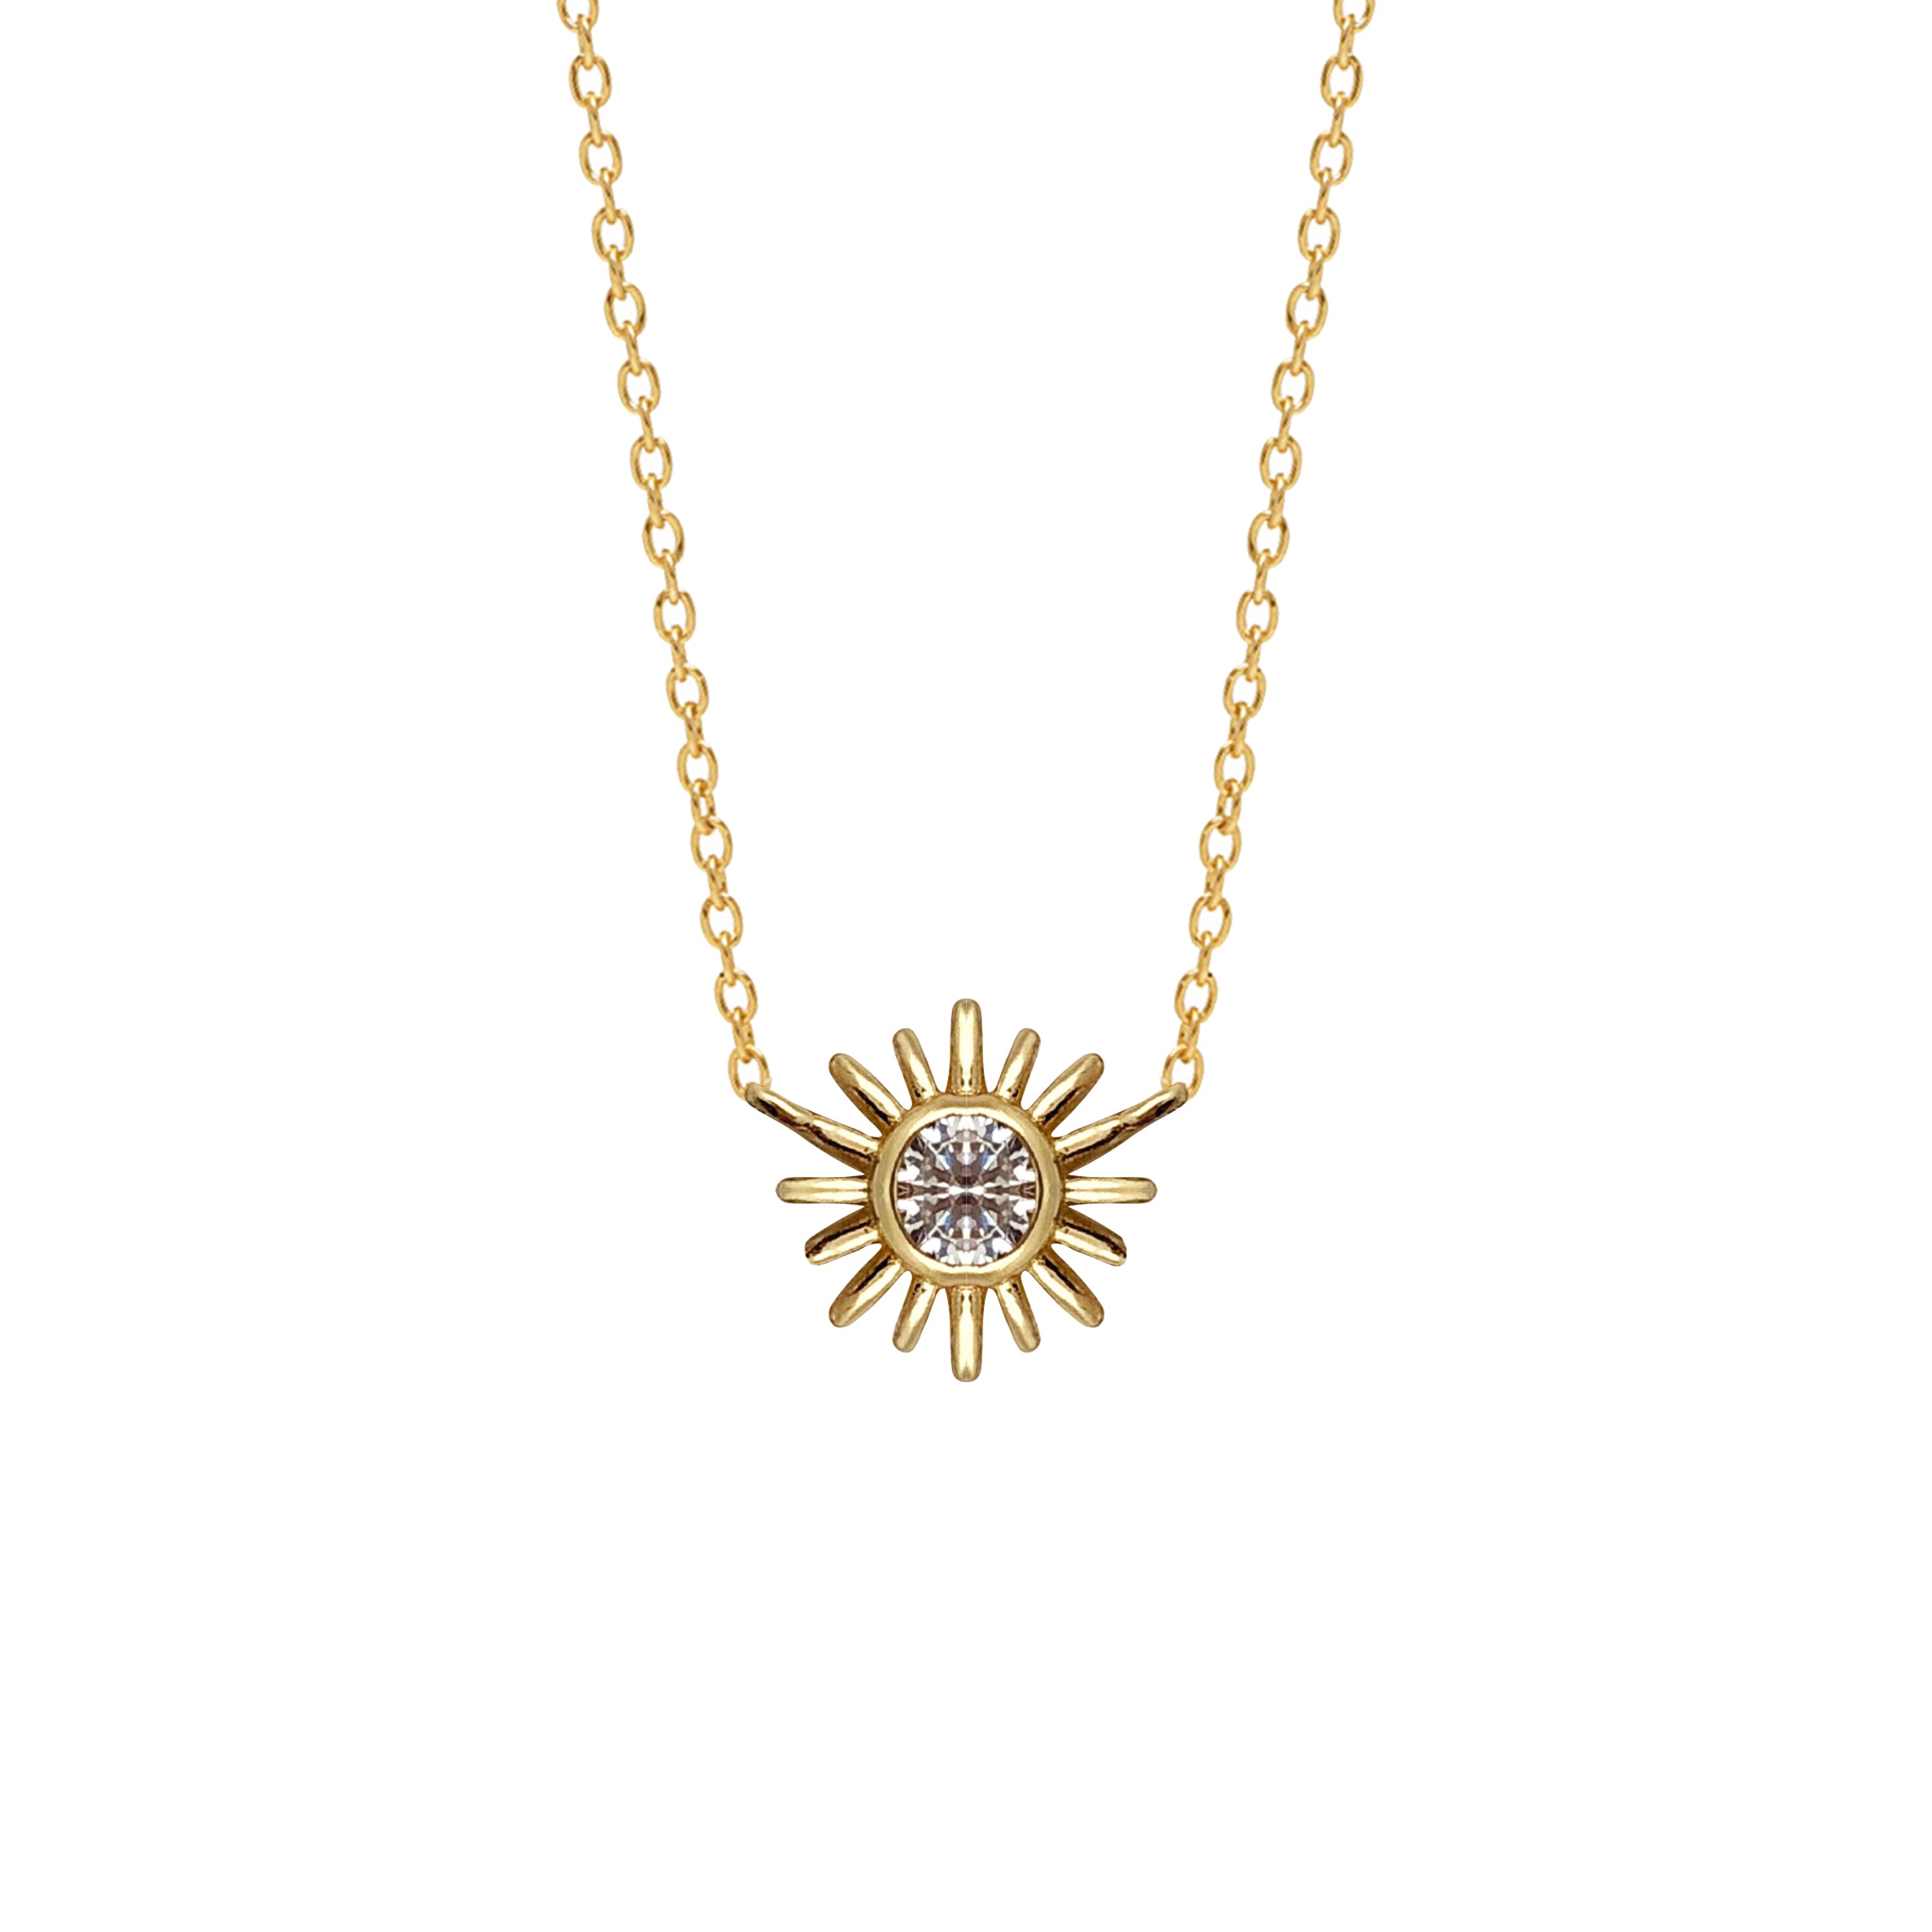 Sunburst White Zircon Pendant - Mirabelle Jewellery